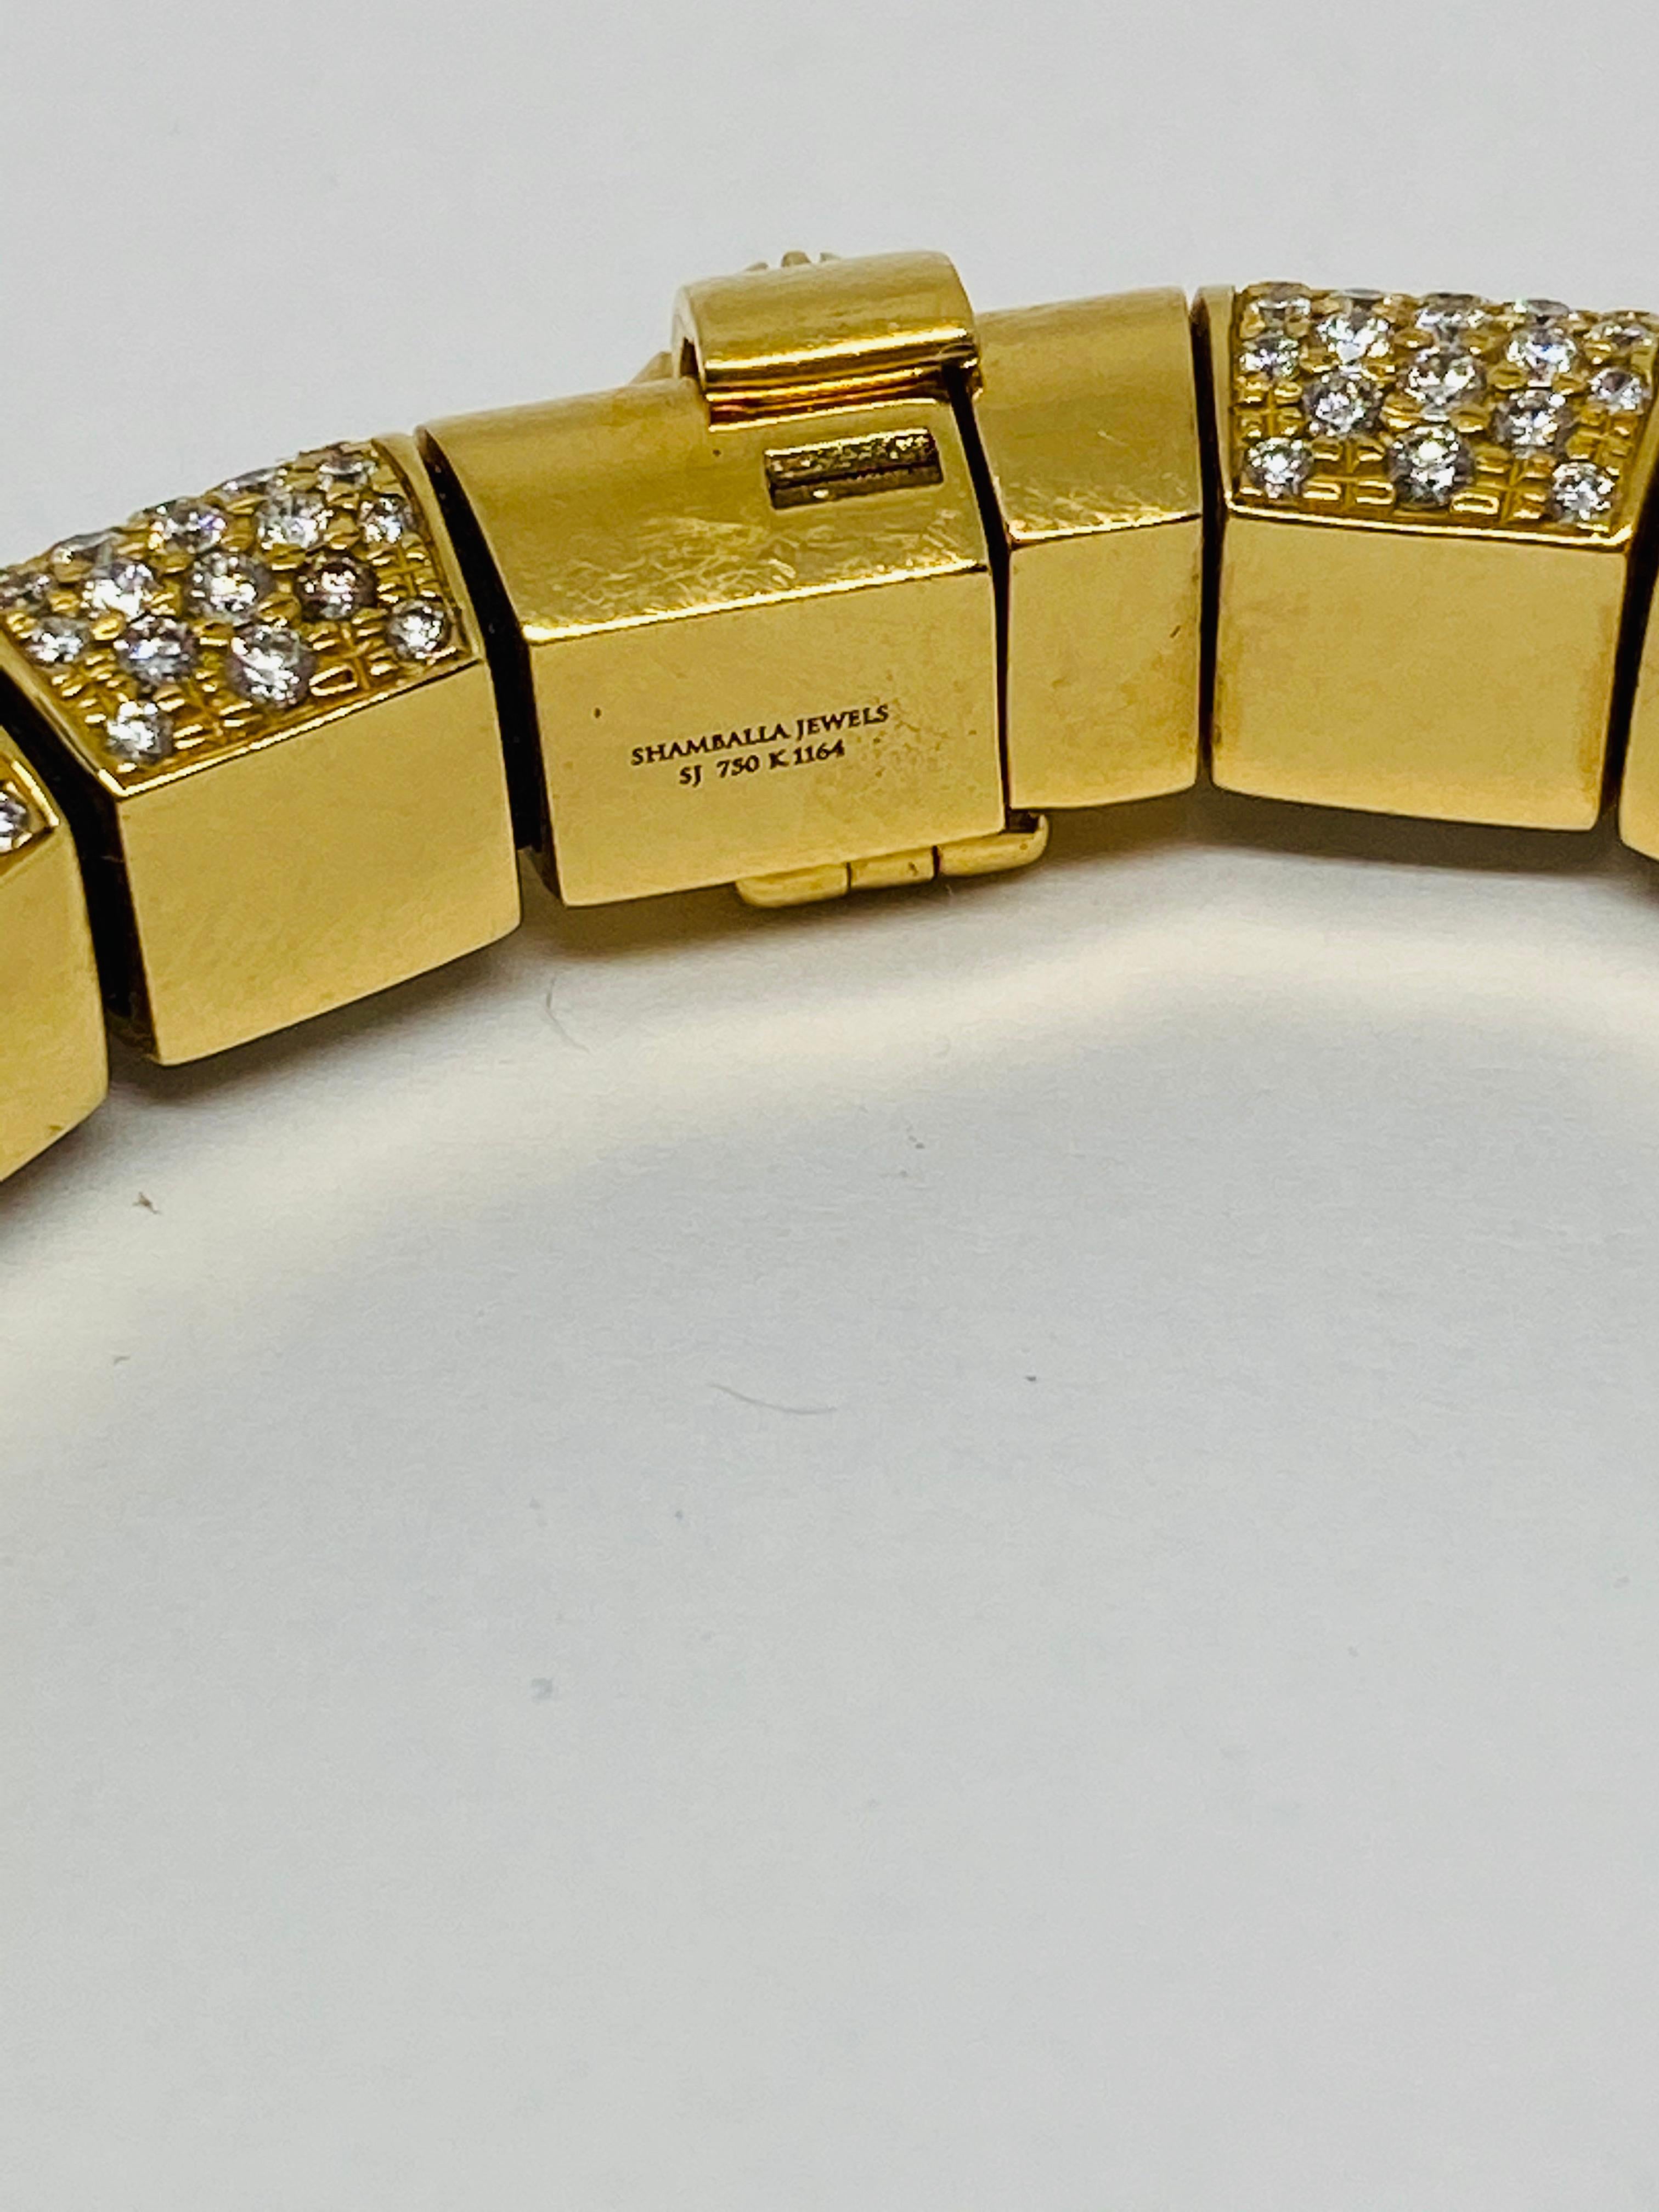 Shamballa Jewels 12ct Diamond 18K Yellow Gold and Leather Bracelet  1